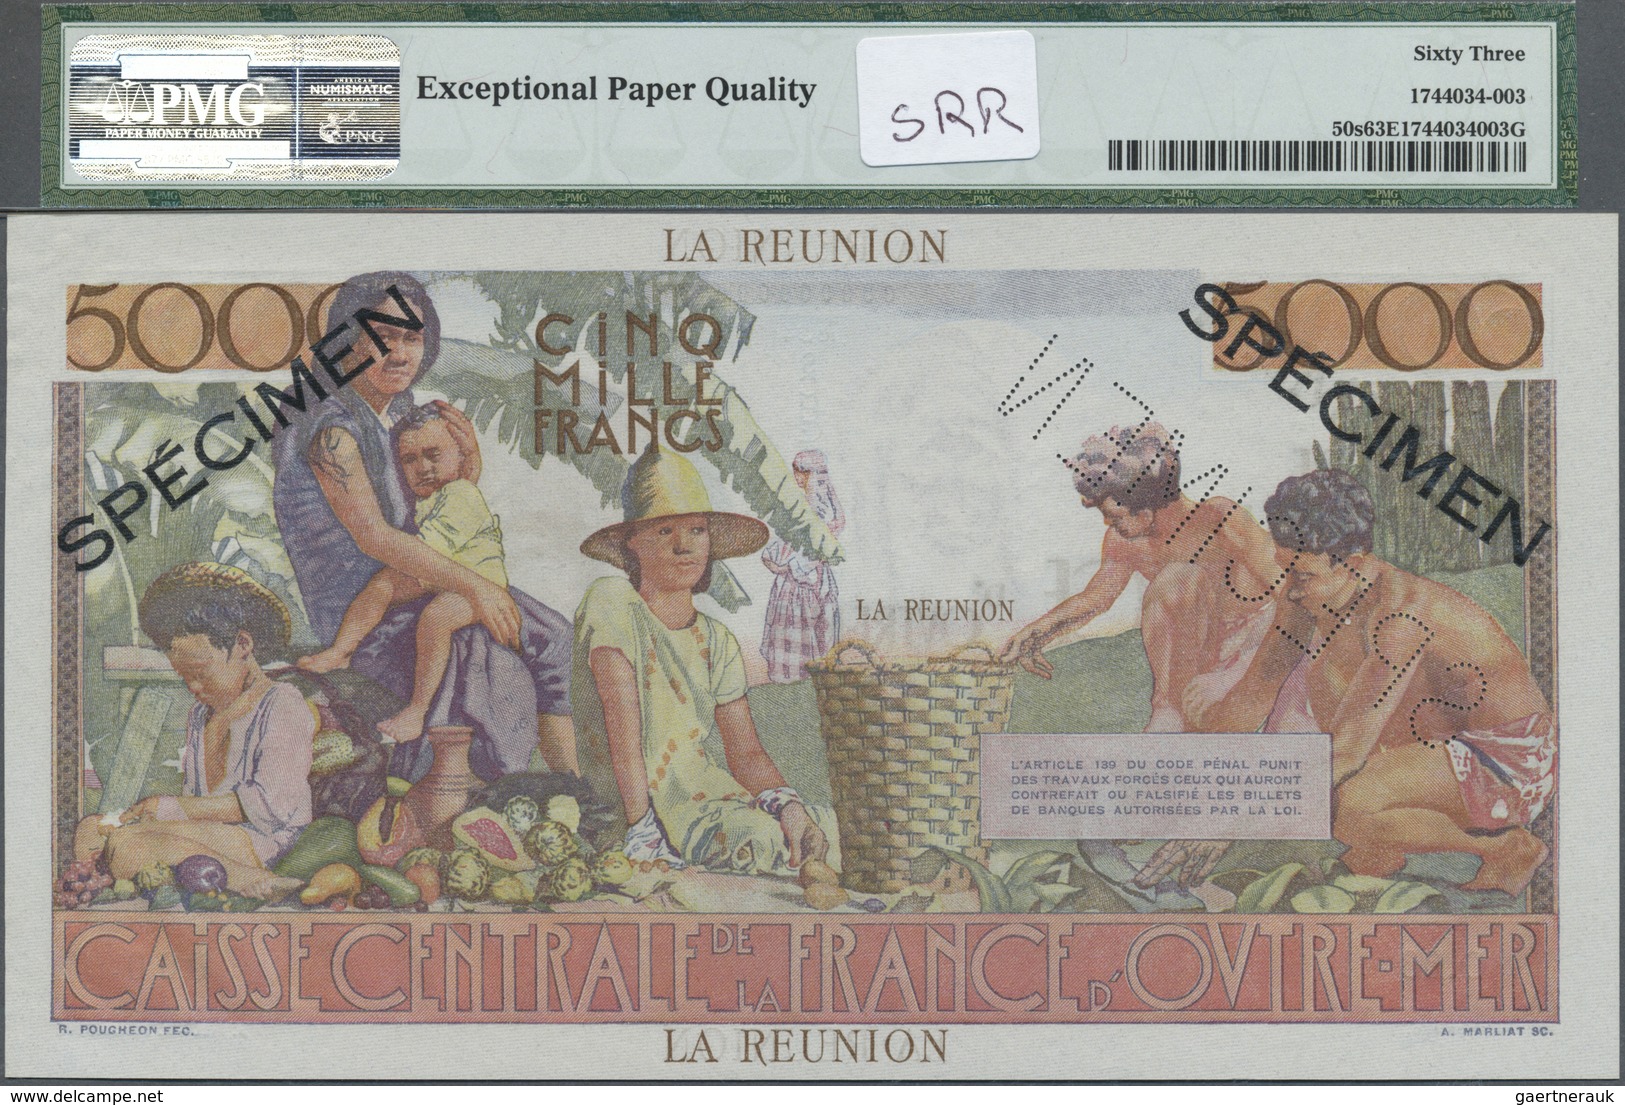 Réunion: 5000 Francs ND(1960) P. 50s, PMG Graded 63 Choice UNC EPQ. - Réunion